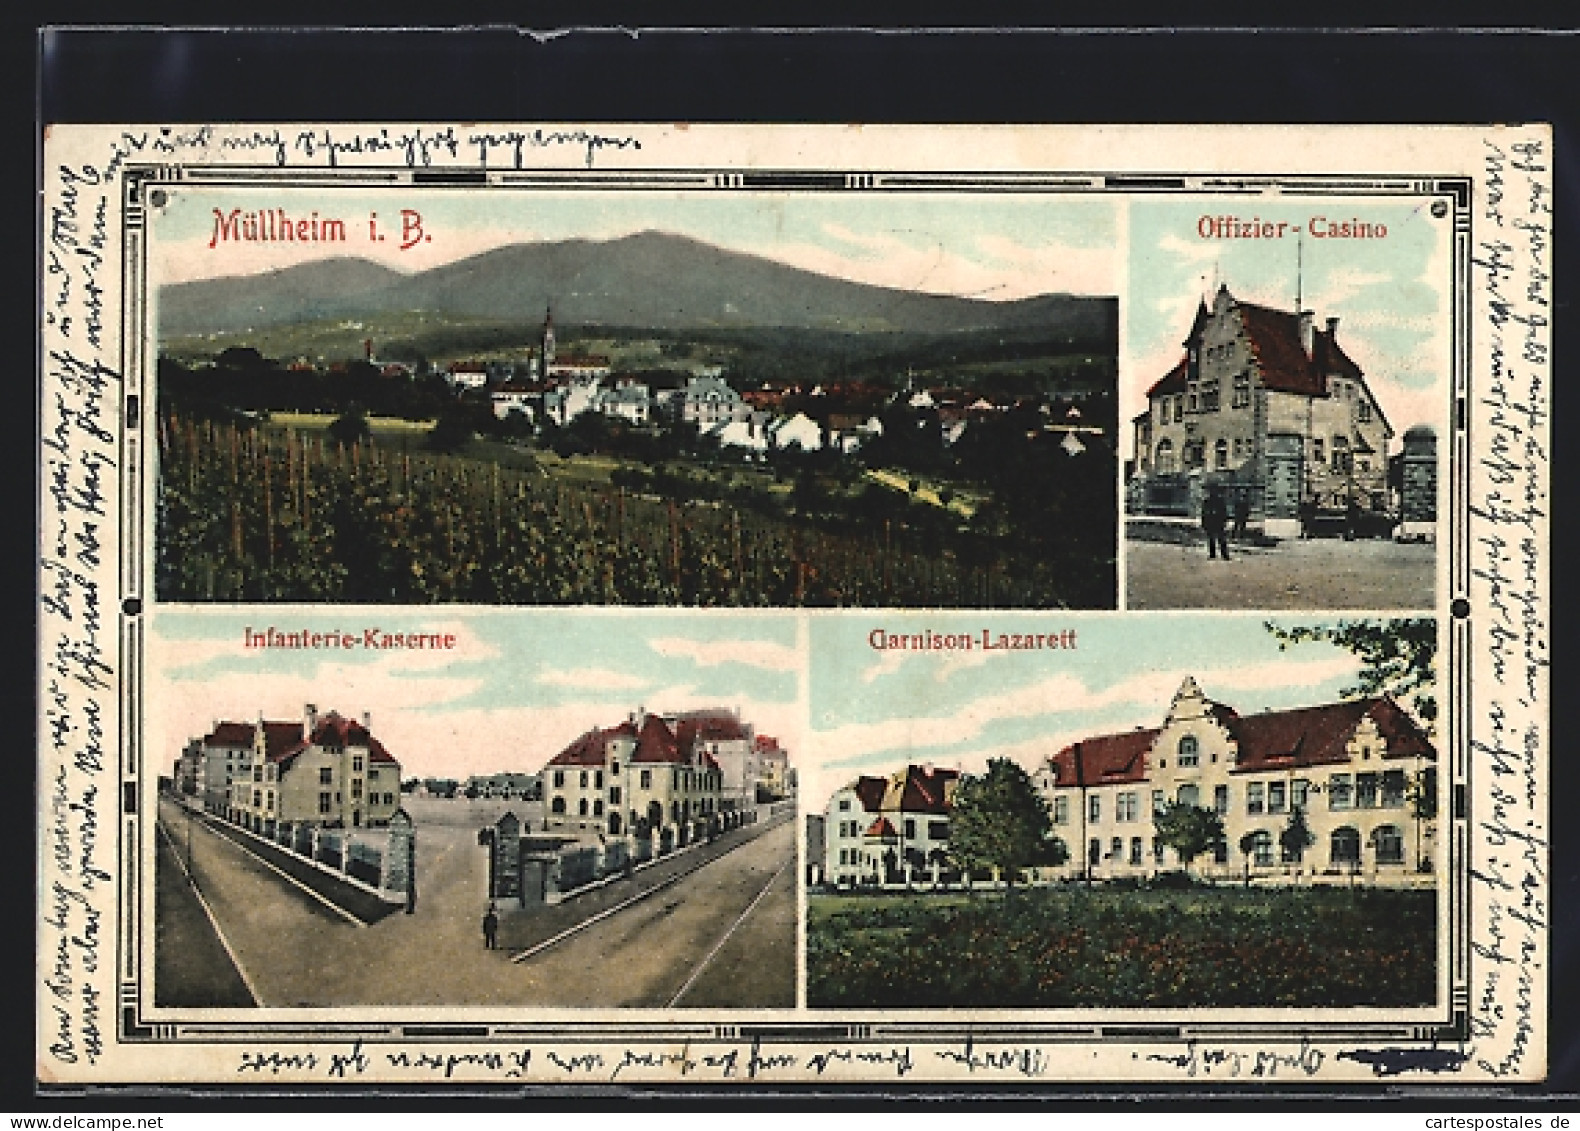 AK Müllheim, Infanterie-Kaserne, Garnison-Lazarett, Offizier-Casino  - Muellheim